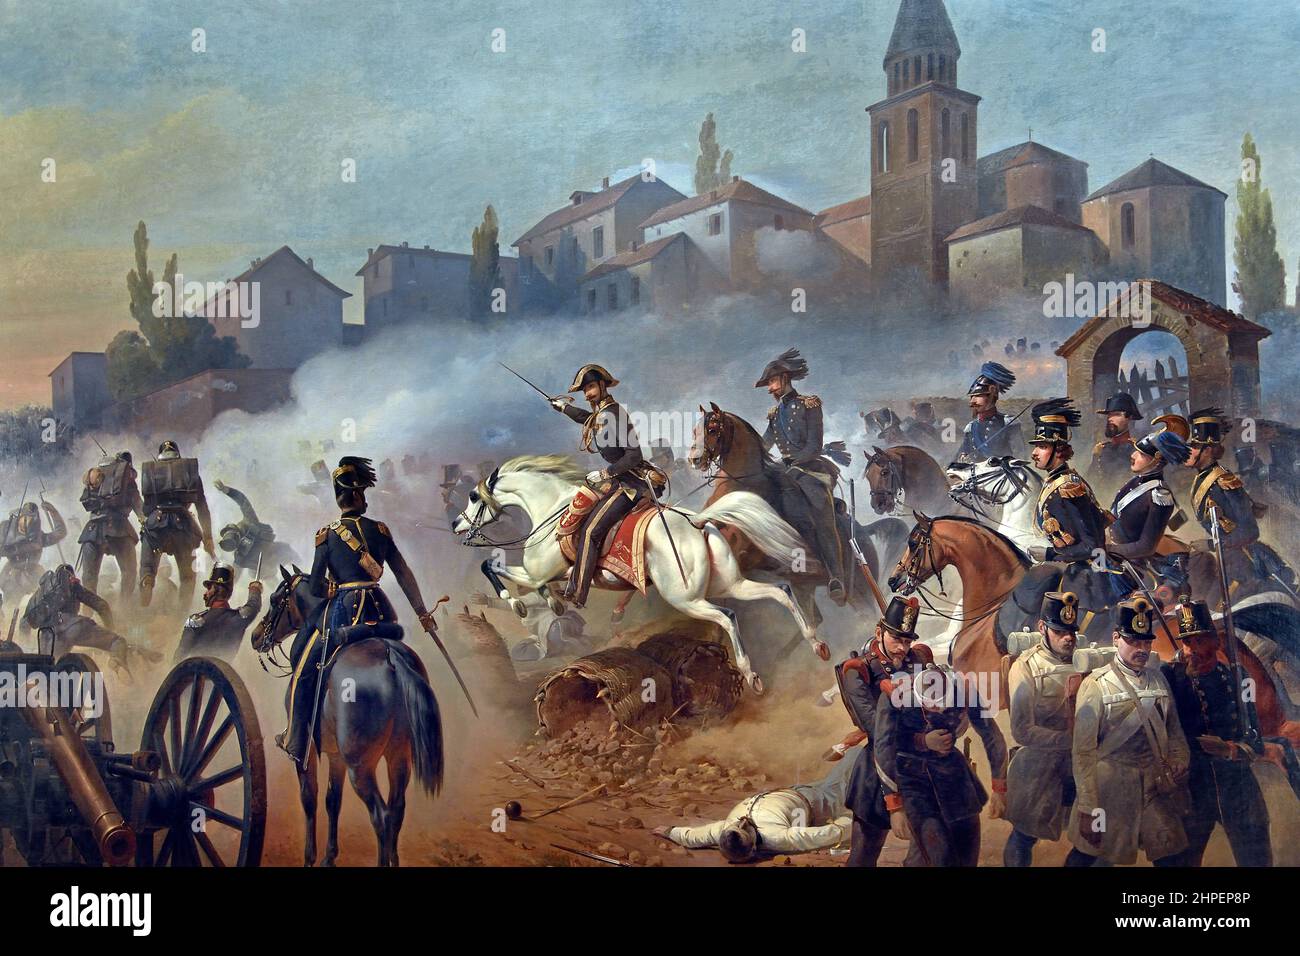 Bataille de Sommacamamamagna qui a eu lieu le 23 juillet 1848 immédiatement avant la bataille de Custoza, dans le contexte de la première guerre d'indépendance. Première guerre d'indépendance, Qui a eu lieu à Sommacampagna le 30 avril 1848, à l'occasion de la bataille de Pastrengo (le matin du 30th, alors que l'attaque de Pastrengo et Bussolengo commençait, Radetzky a essayé d'arrêter l'armée piémontaise par Sona et Sommacagna, mais a été rejeté par la Brigade Aoste. Peinture par Cerruti Bauduc. Banque D'Images